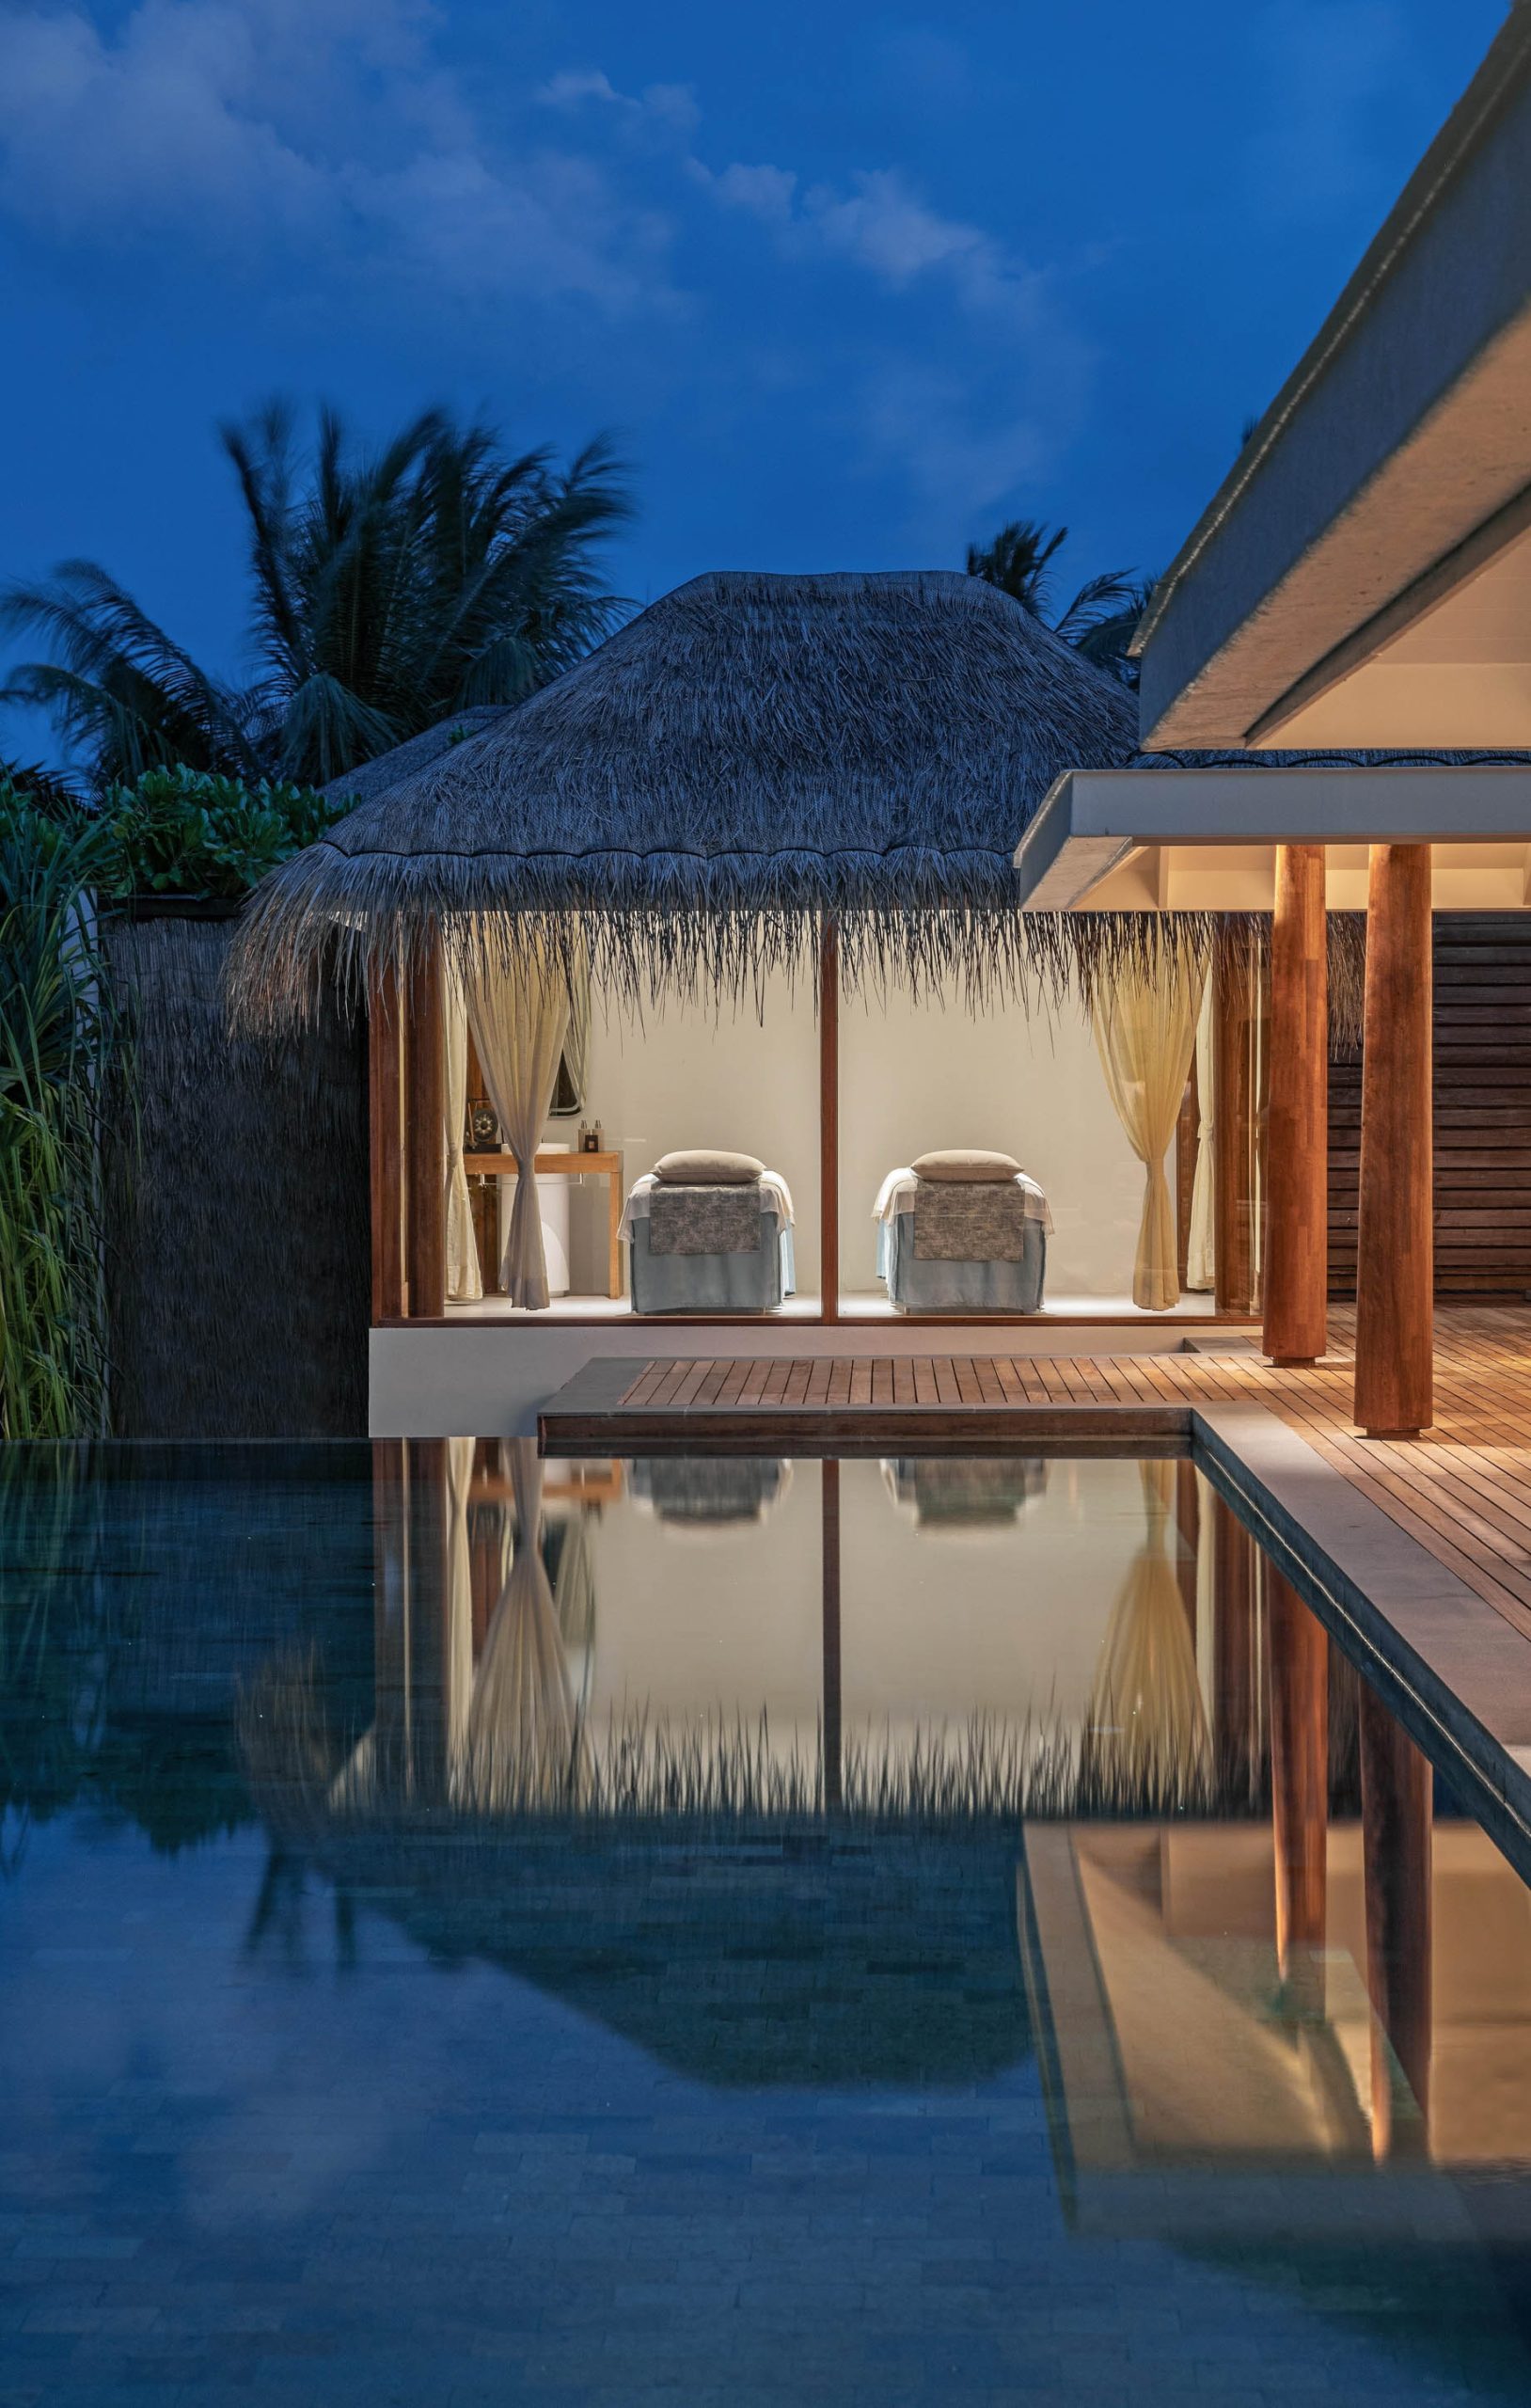 Anantara Kihavah Maldives Villas Resort – Baa Atoll, Maldives – Beach Pool Residence Personal Spa View Night